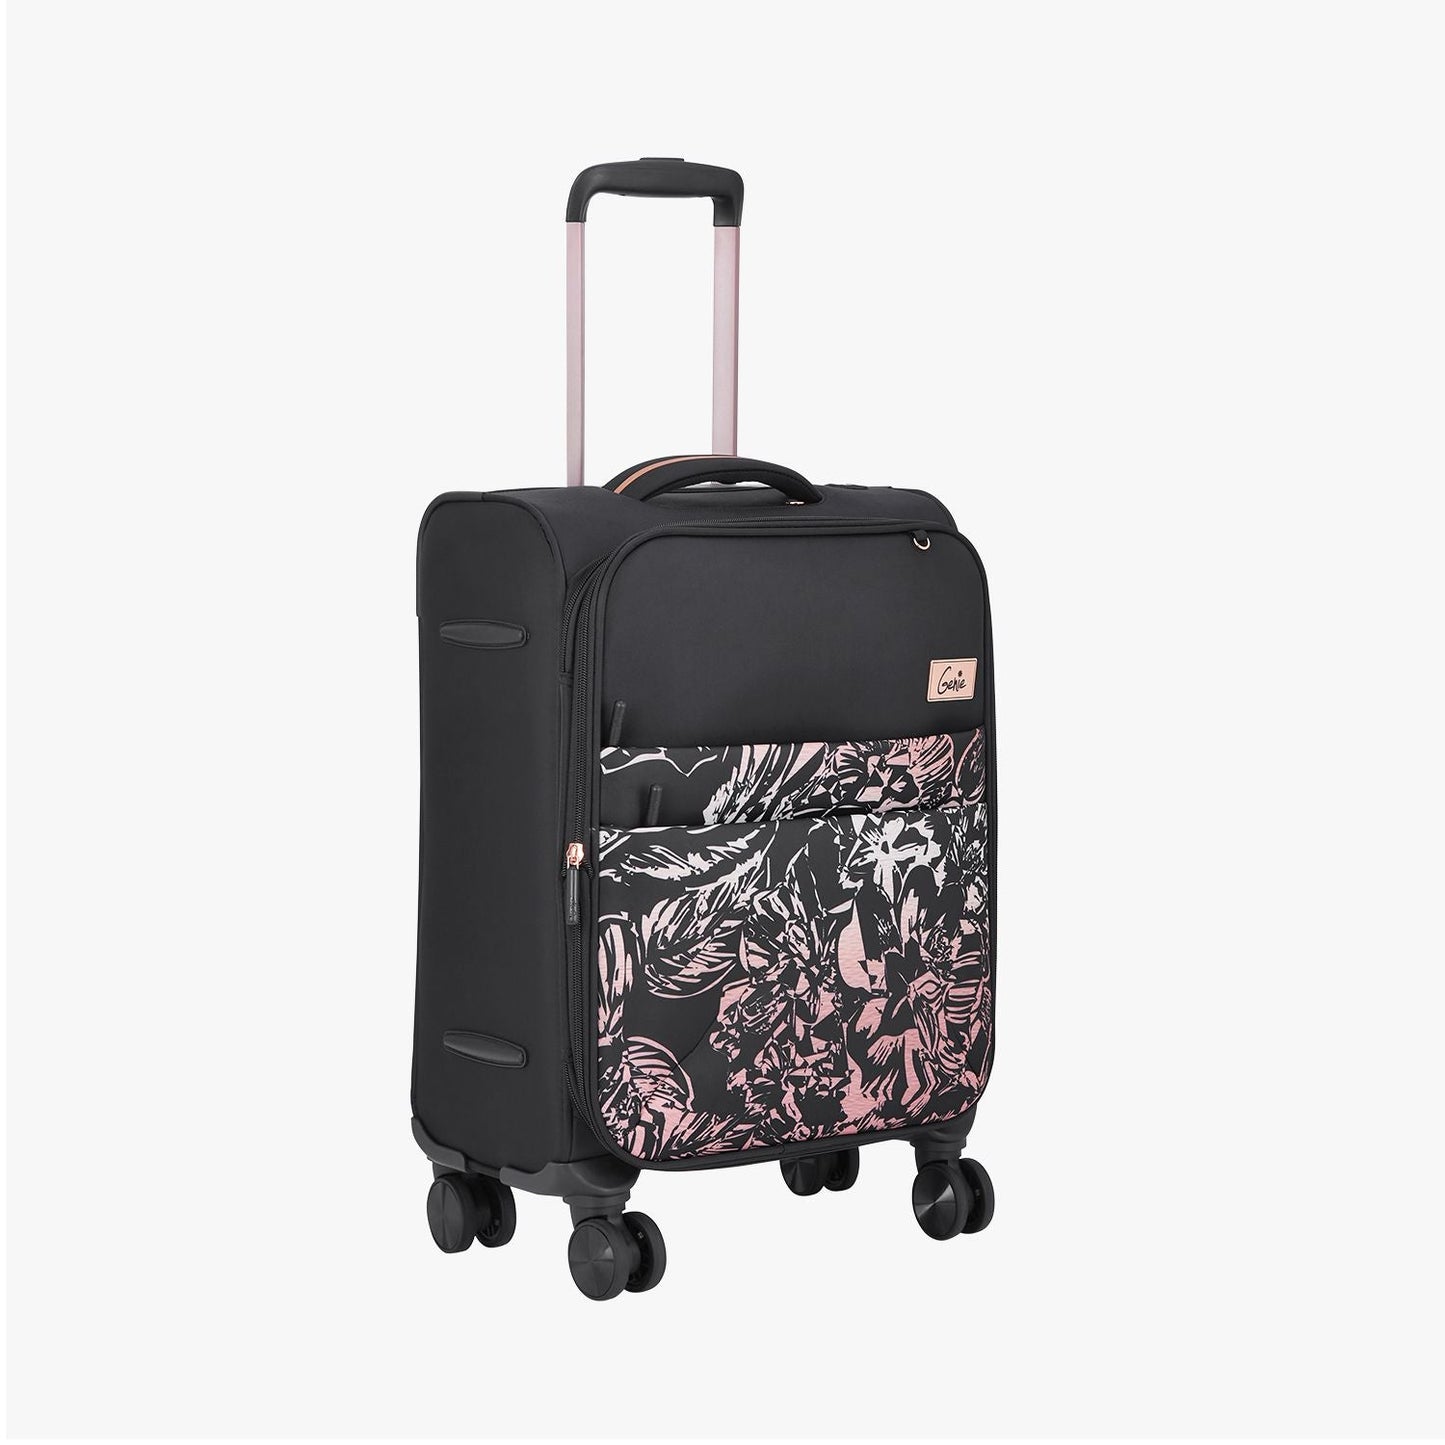 Genie Hazel Soft Luggage Suitcase